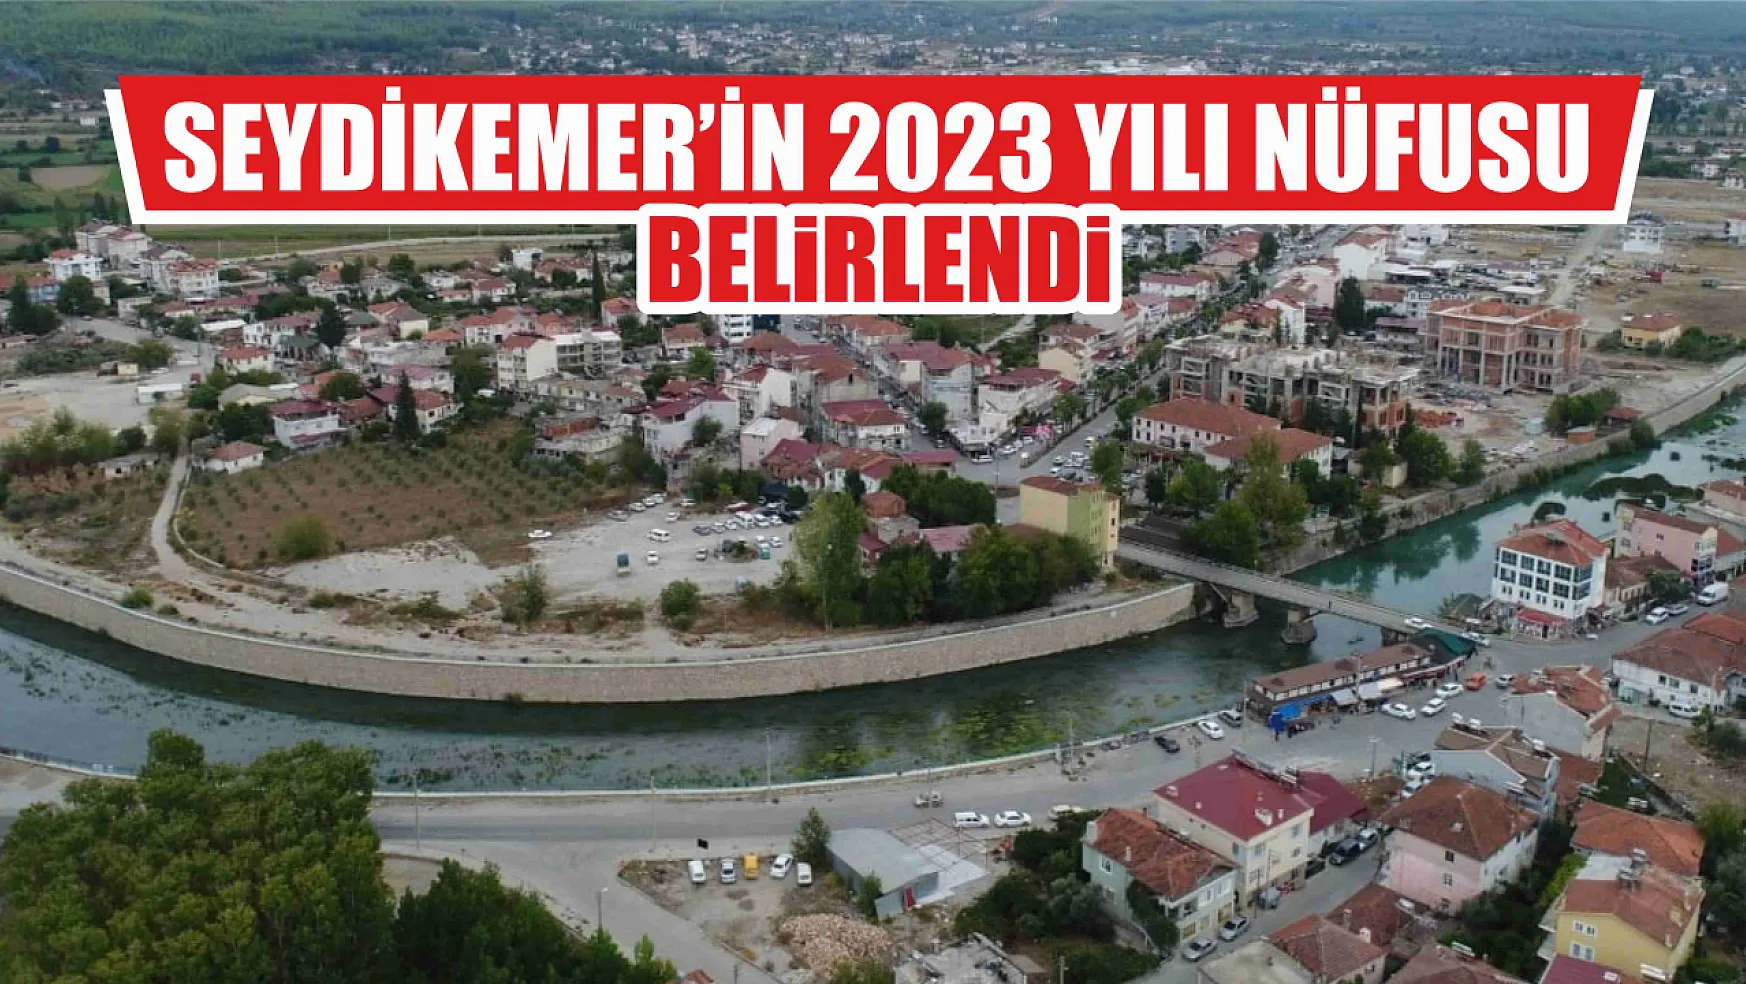 Seydikemer'in 2023 yılı nüfusu belirlendi